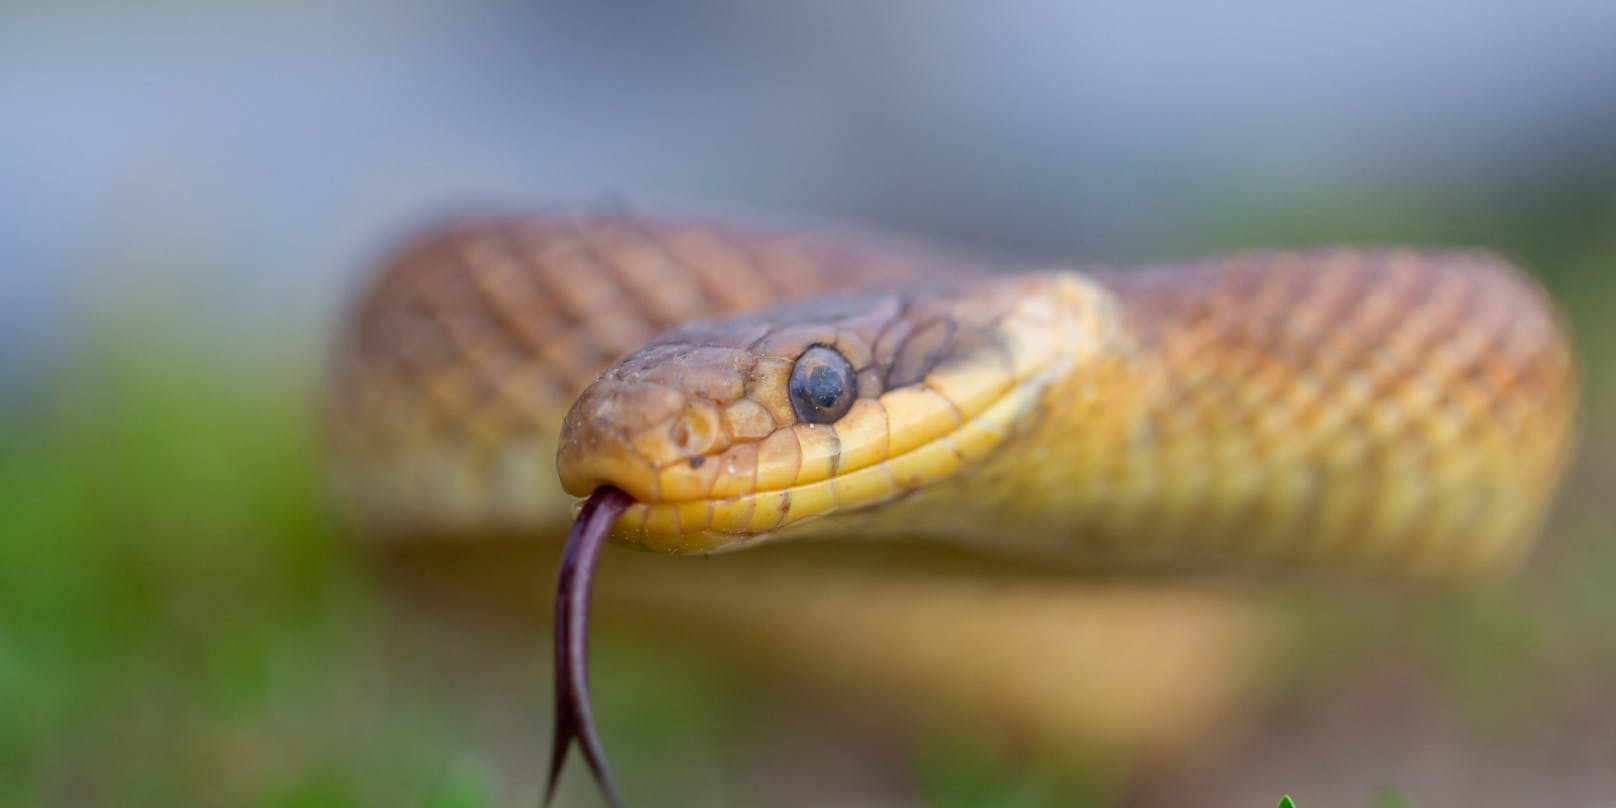 Die Äskulapnatter gehört zu den größten Schlangenarten Europas. Sie ist ungiftig.